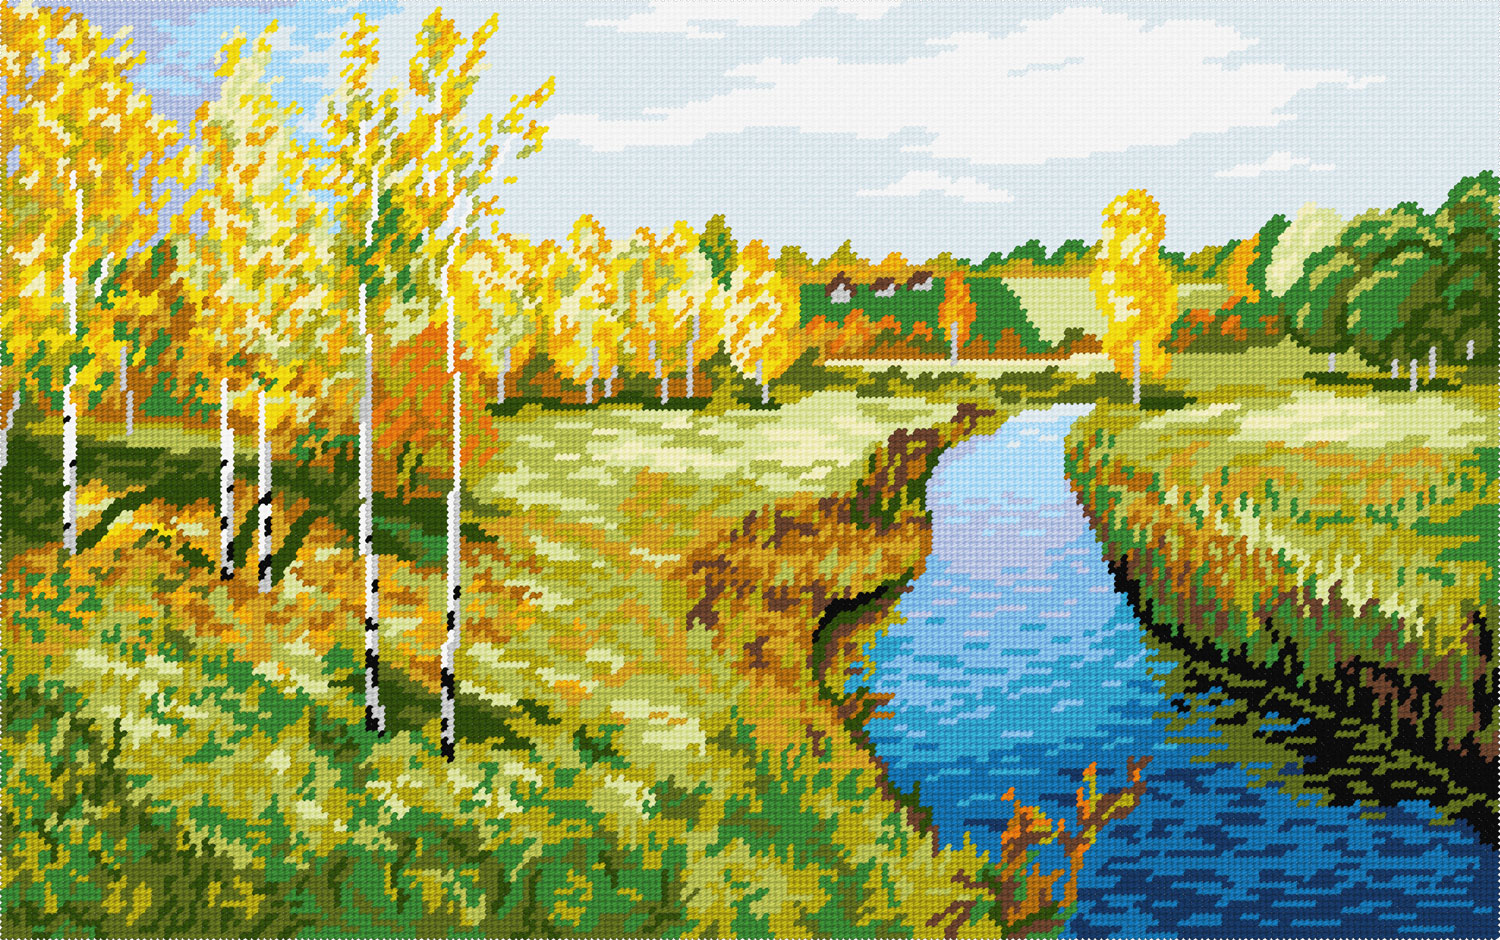 TS39 — Пейзаж «Золота осінь», І. Лєвітан